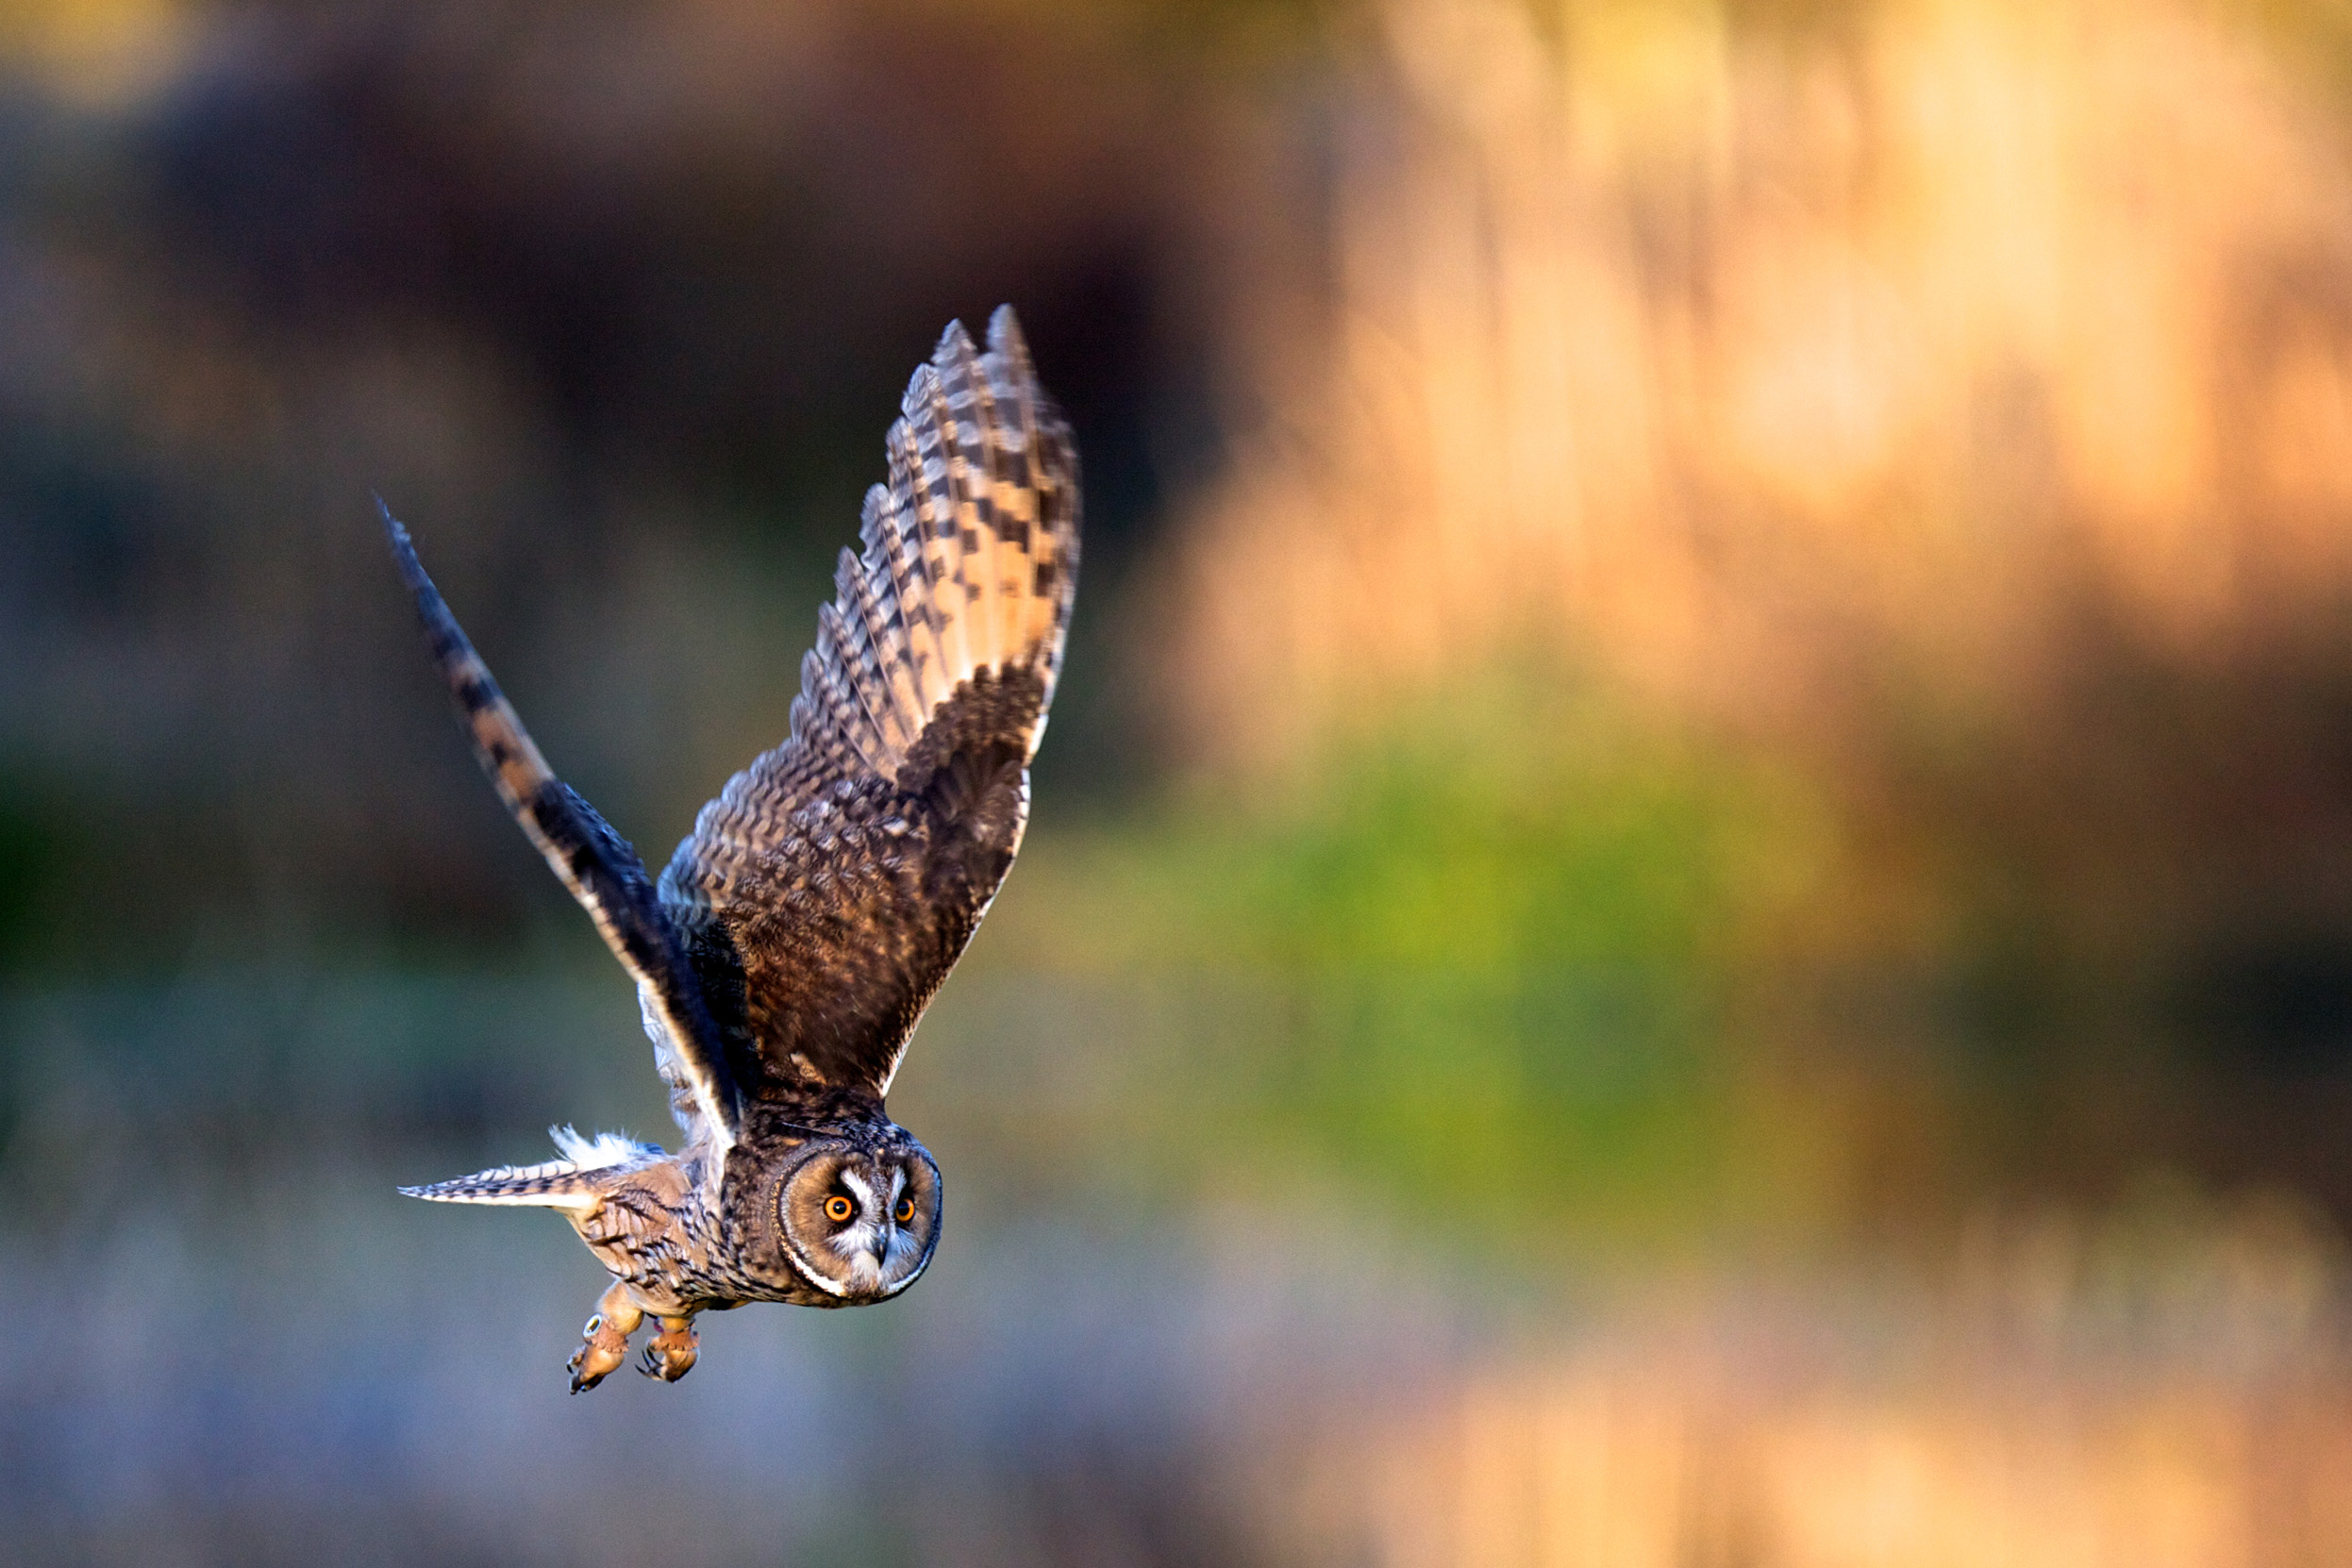 Long-eared Owl in mid-flight.